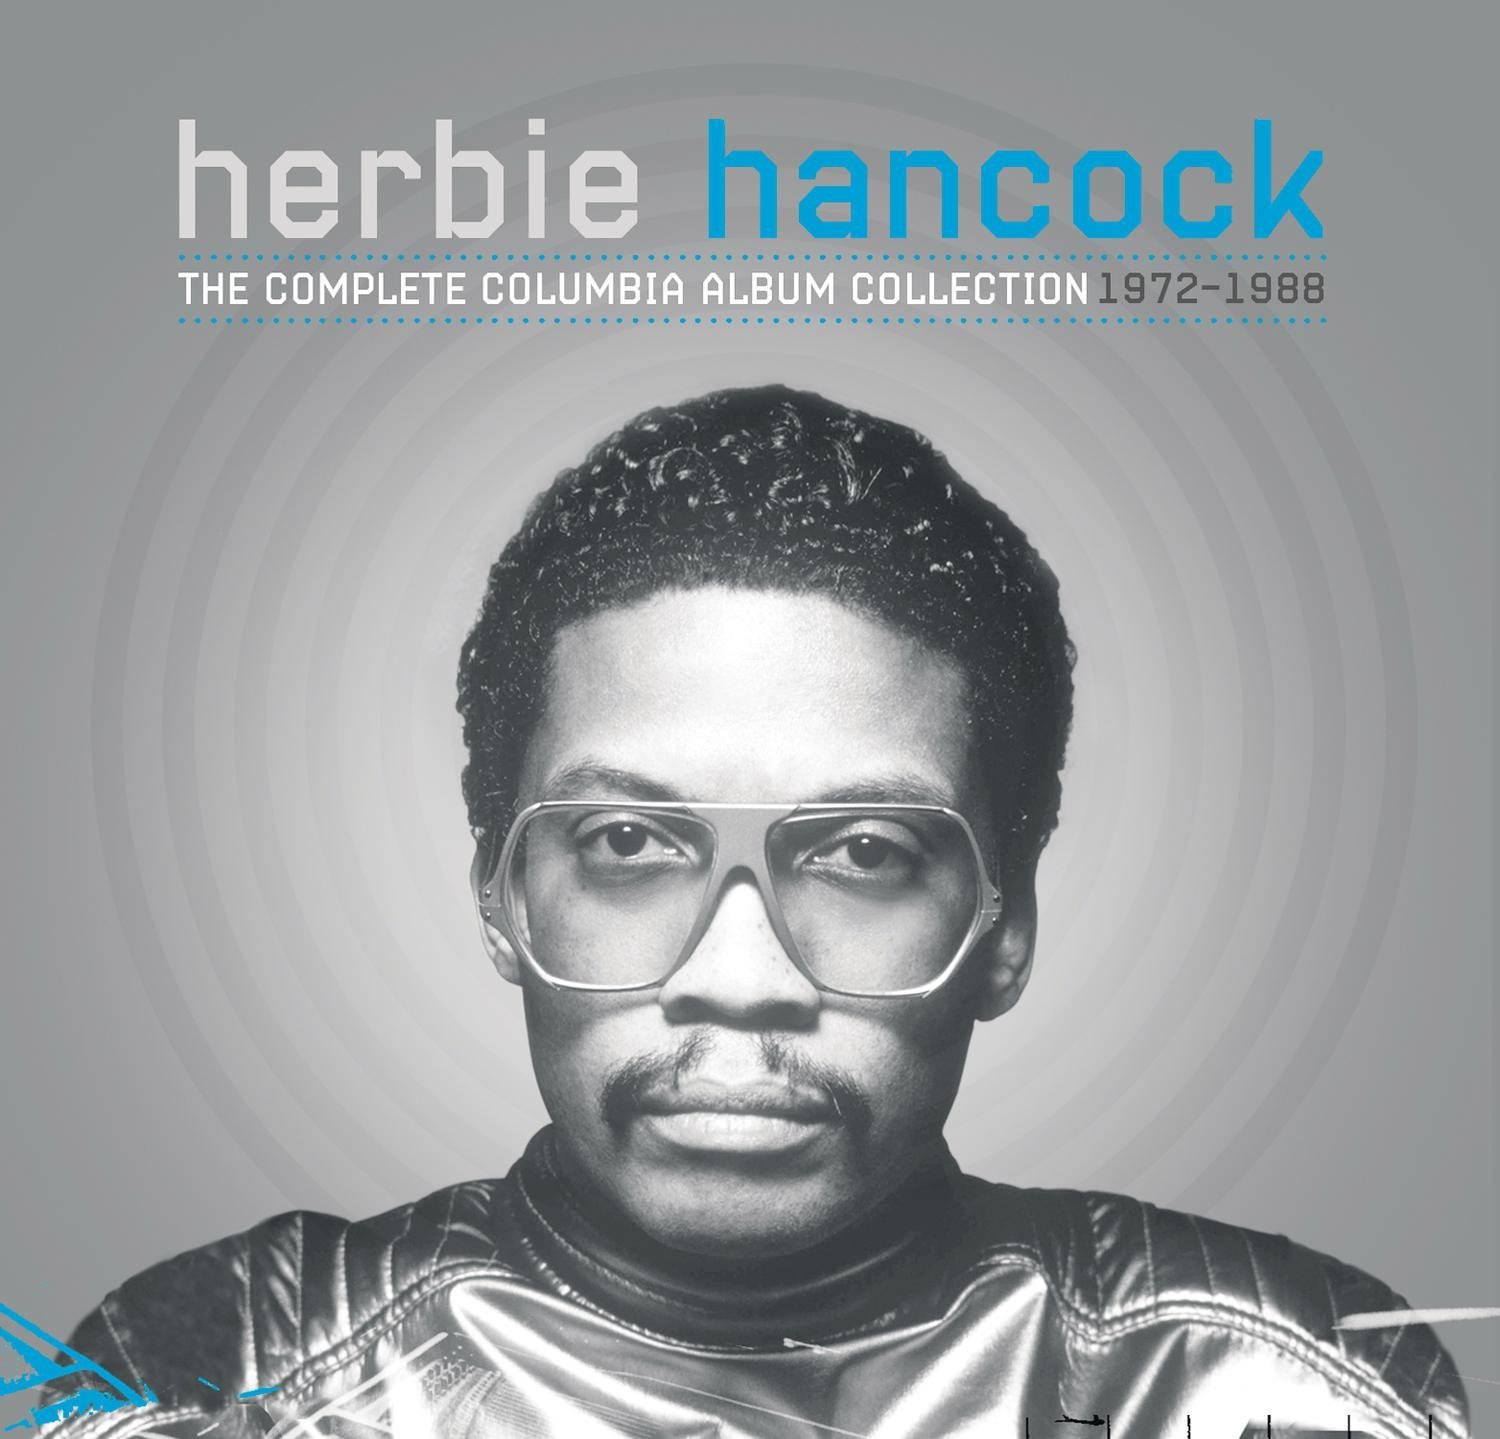 Herbie Hancock 1500 X 1439 Wallpaper